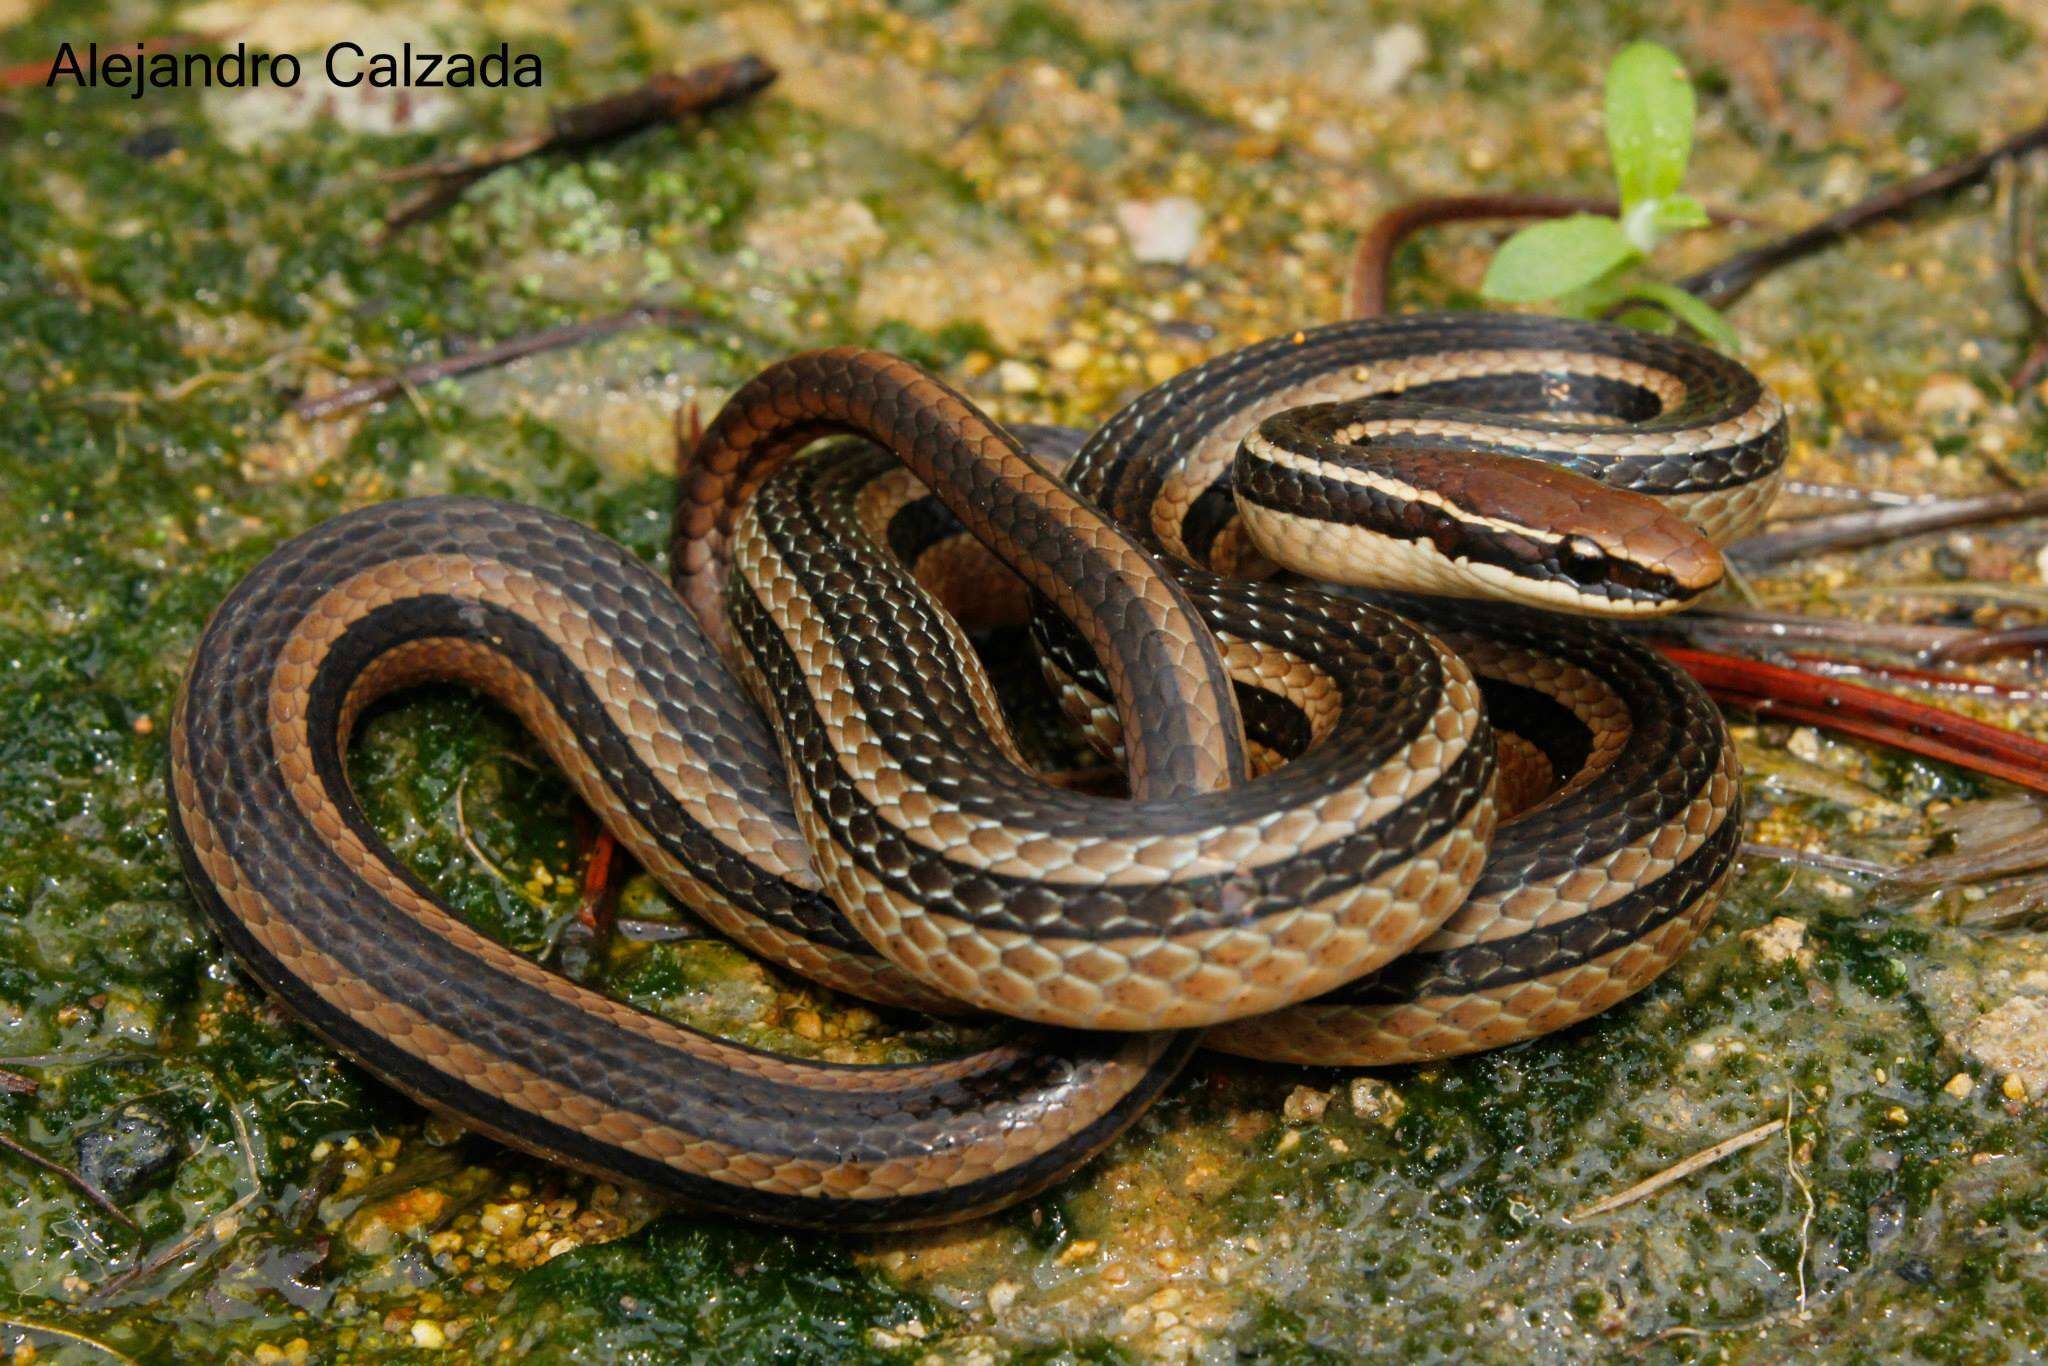 Image of Ribbon Graceful Brown Snake